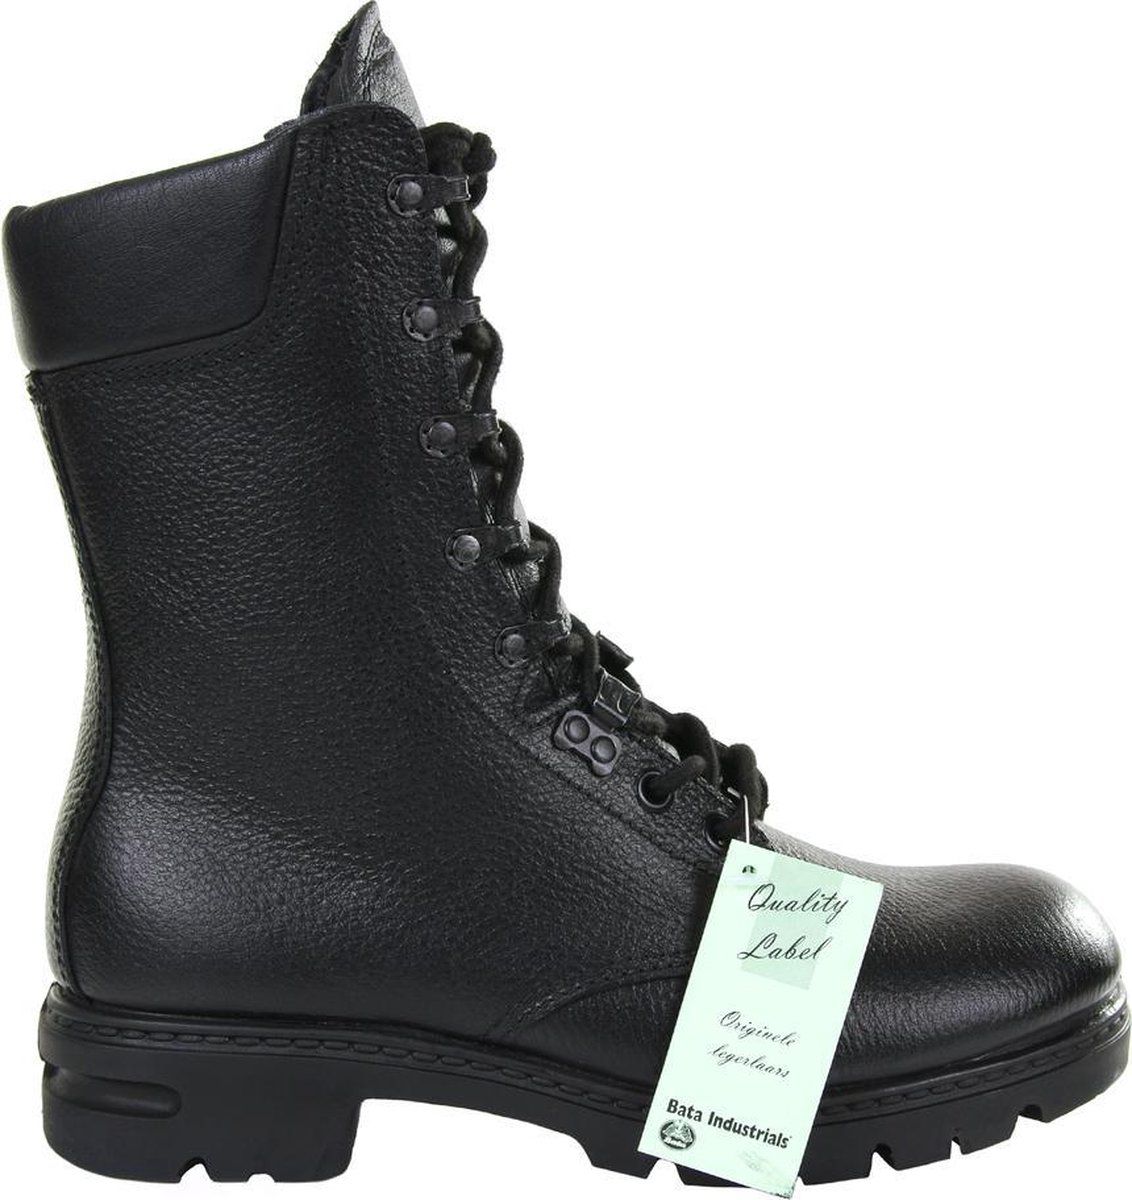 Bata - Original Dutch combat boots Bata M90/M400 (kleur: Zwart / maat: 225M)